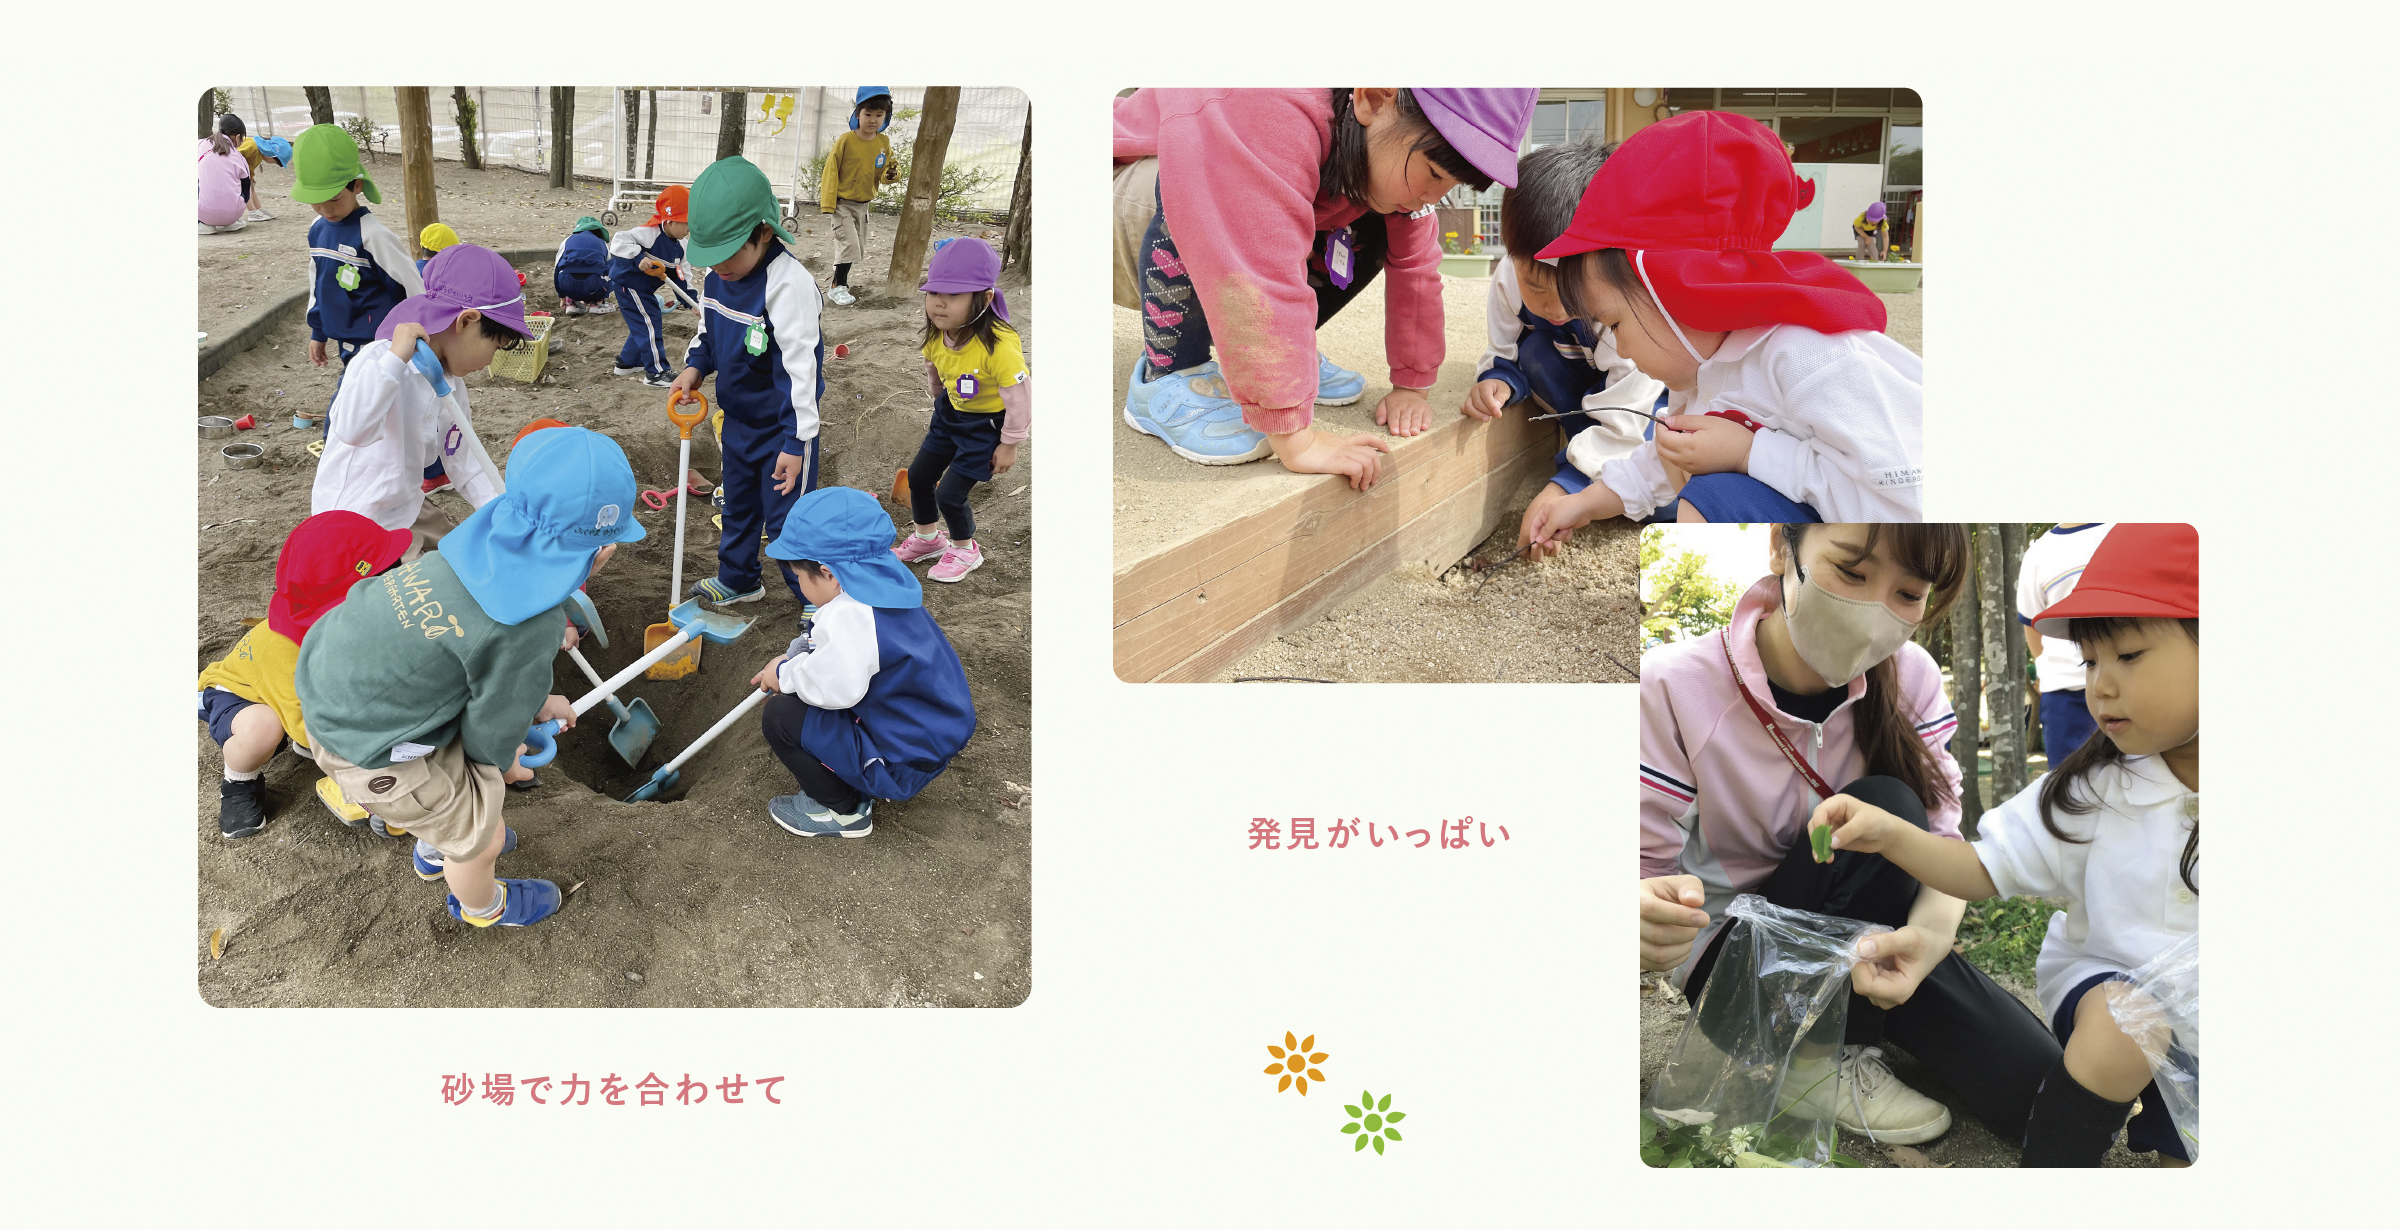 ひまわり明野幼稚園の保育環境